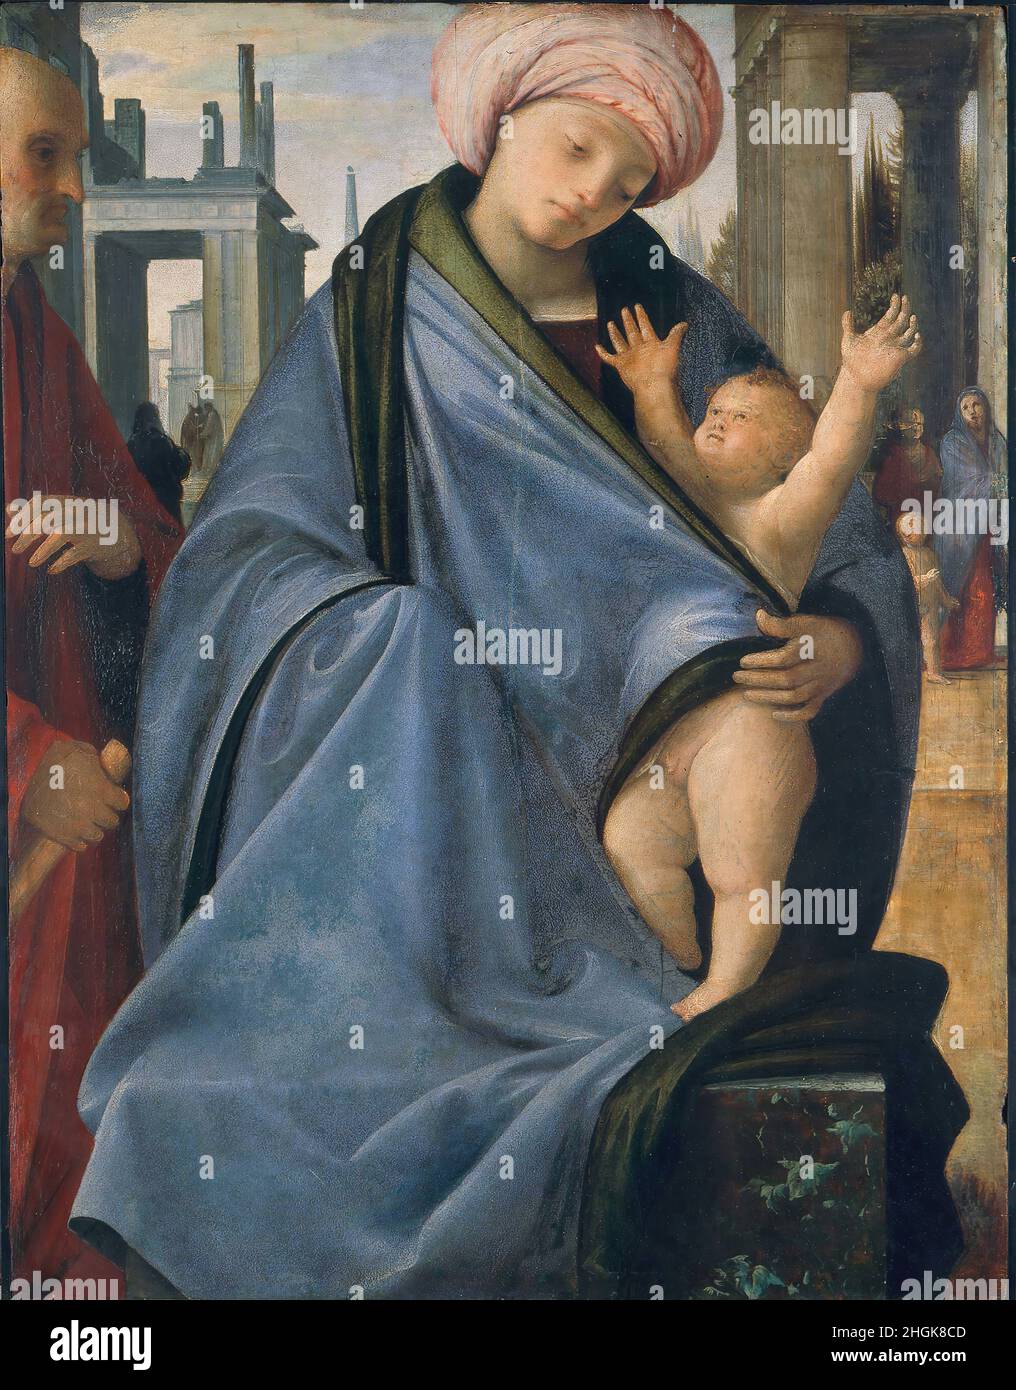 Suardi Bartolomeo (Bramantino) - Milano - Pinacoteca di Brera - (sala 11) Madonna con il Bambino, figura maschile e figurette nello sfondo (1515 20) (olio su tavola 61 x 47 cm)sl11 Stock Photo